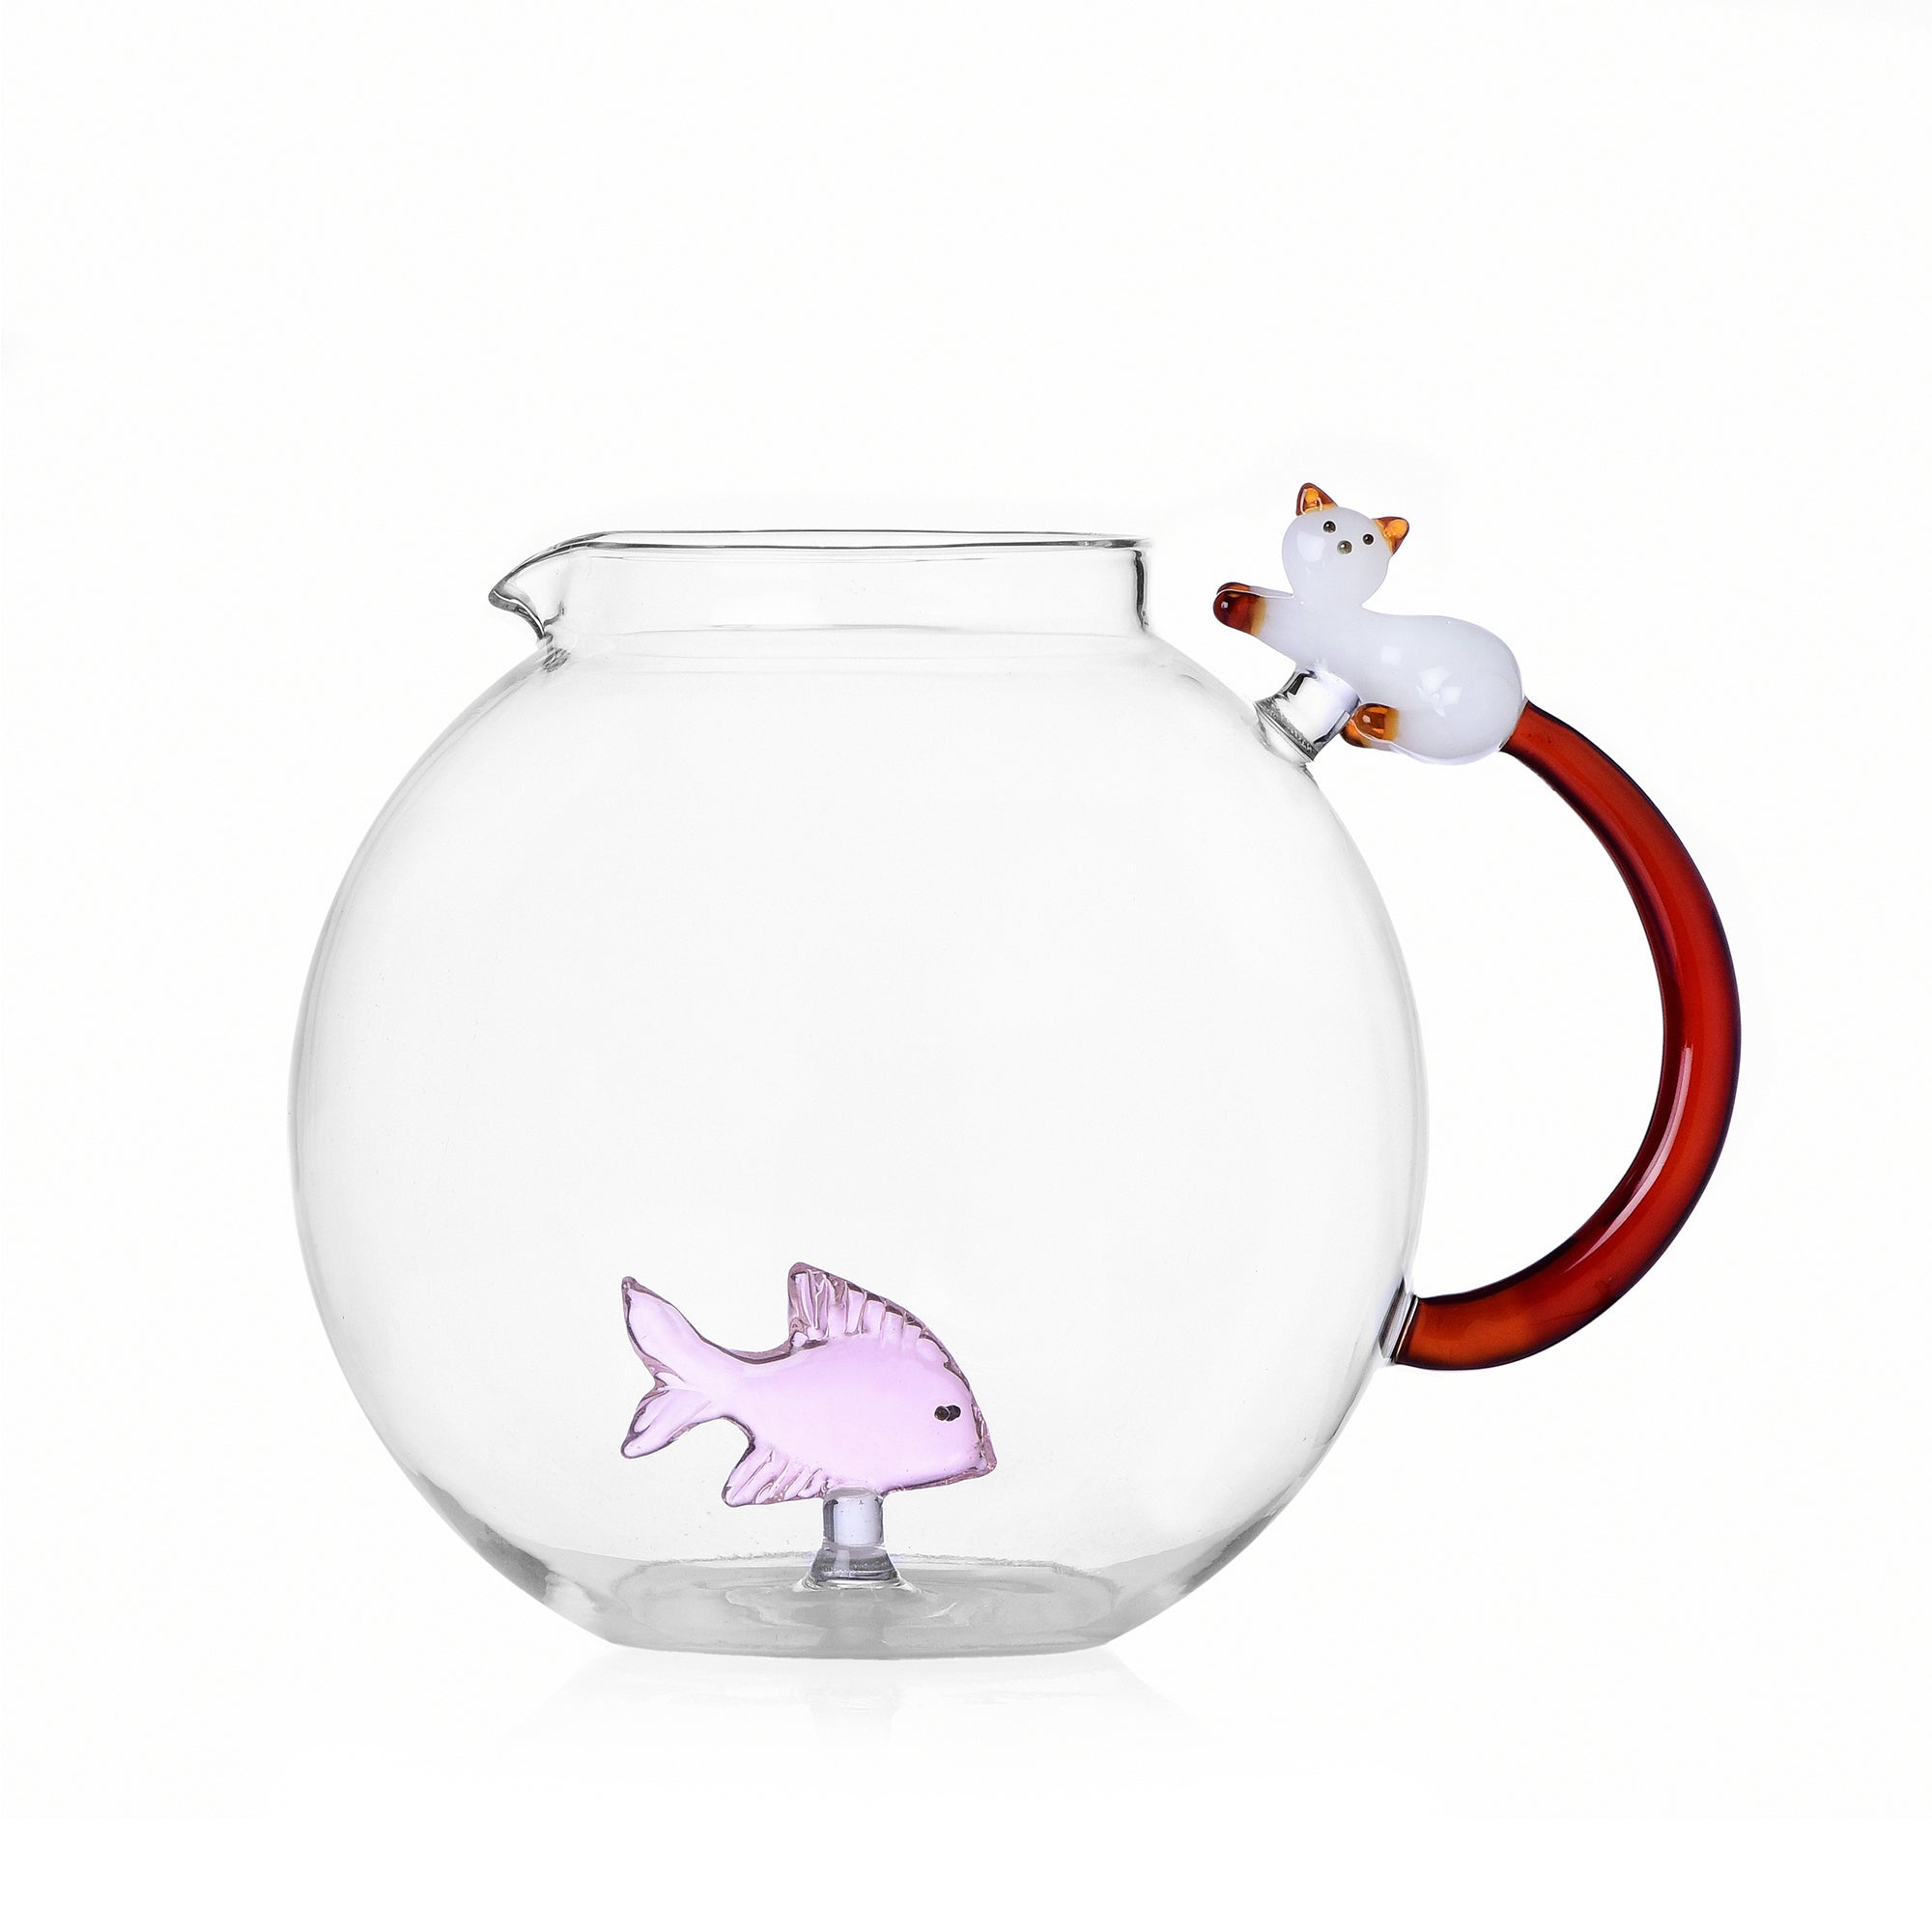 Ichendorf Tabby-Katzenkrug, rosa Fisch und weiße Katze mit bernsteinfarbenem Schwanz